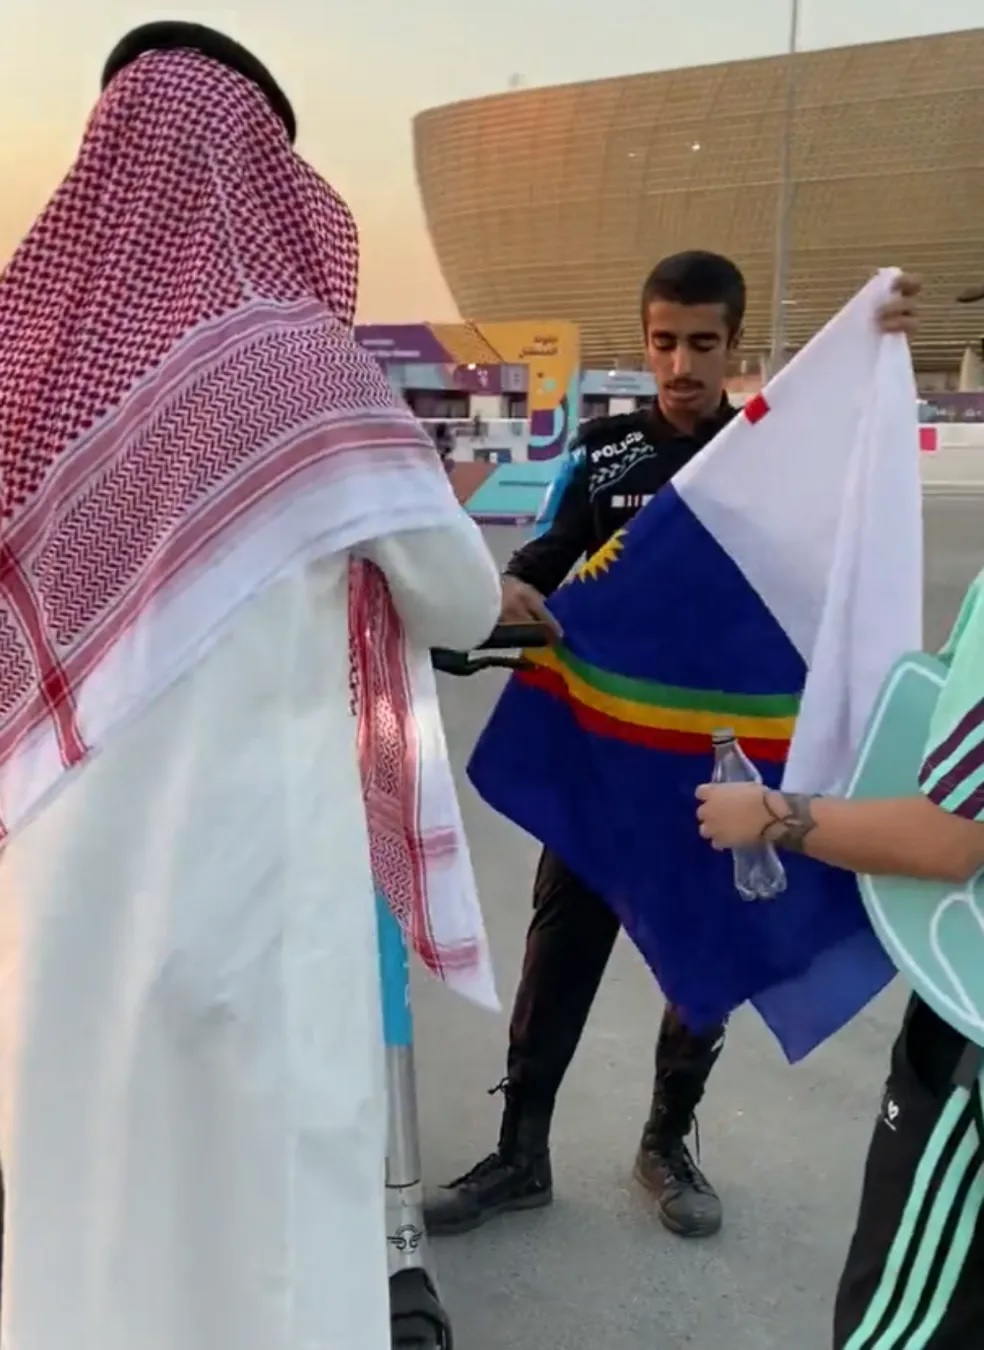 VÍDEO: Bandeira de Pernambuco é confundida com LGBTQIAP+ e gera abordagem no Catar